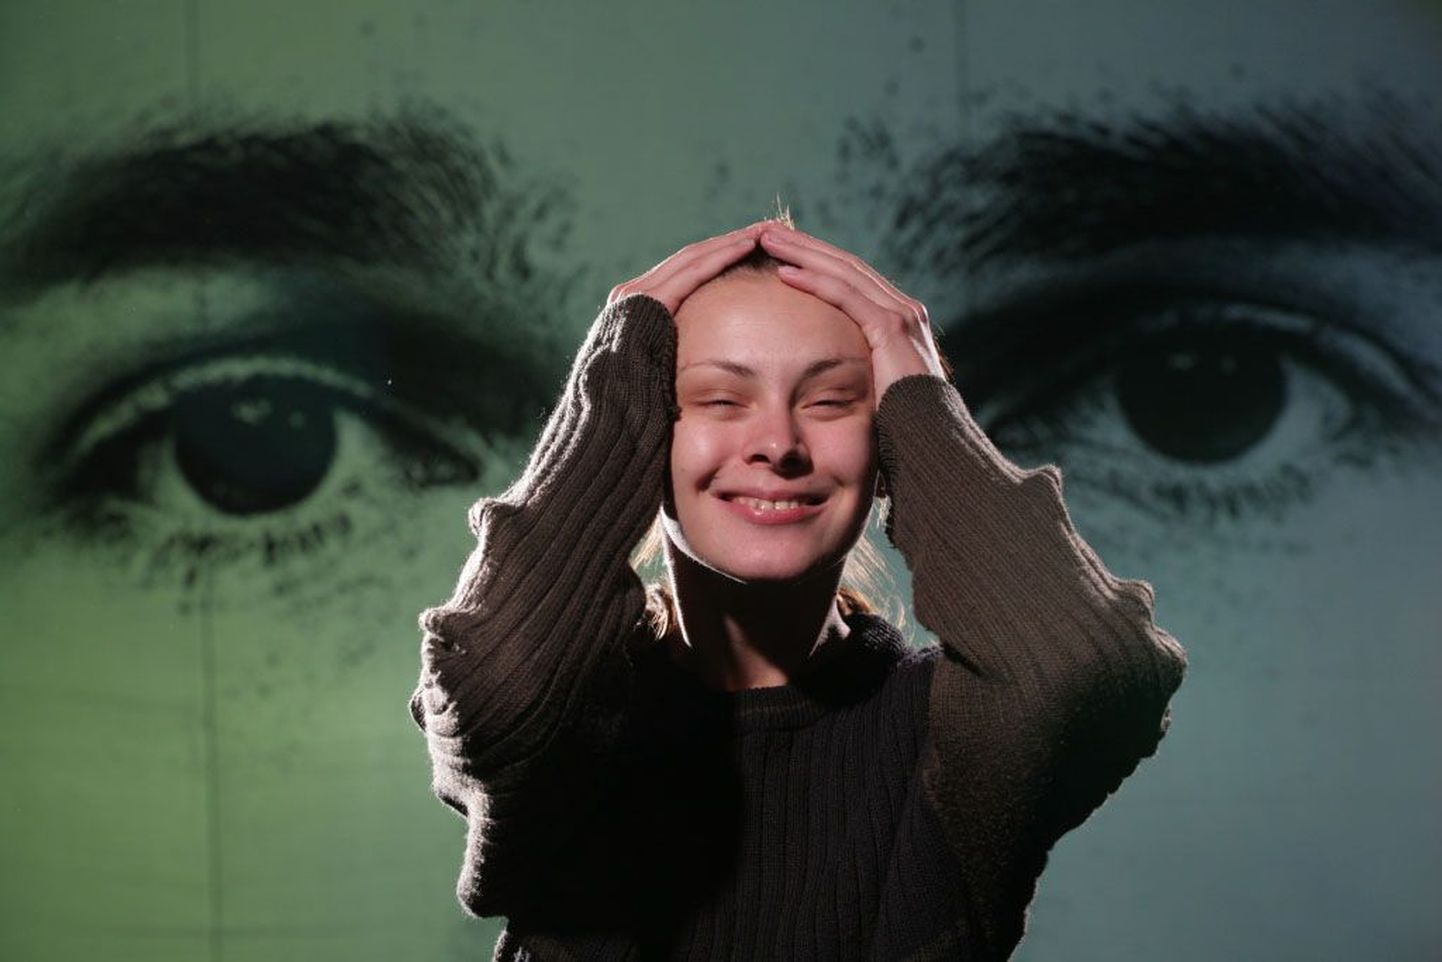 Vene näitlejanna Marina Kartseva Uljanovski draamateatrist toob Pärnusse lavastuse “Nataša unistus”. Nukker lugu räägib täiskasvanute ellu astuvast lastekodutüdrukust, keda pole kunagi armastatud ning kelle armastust ei vaja keegi.